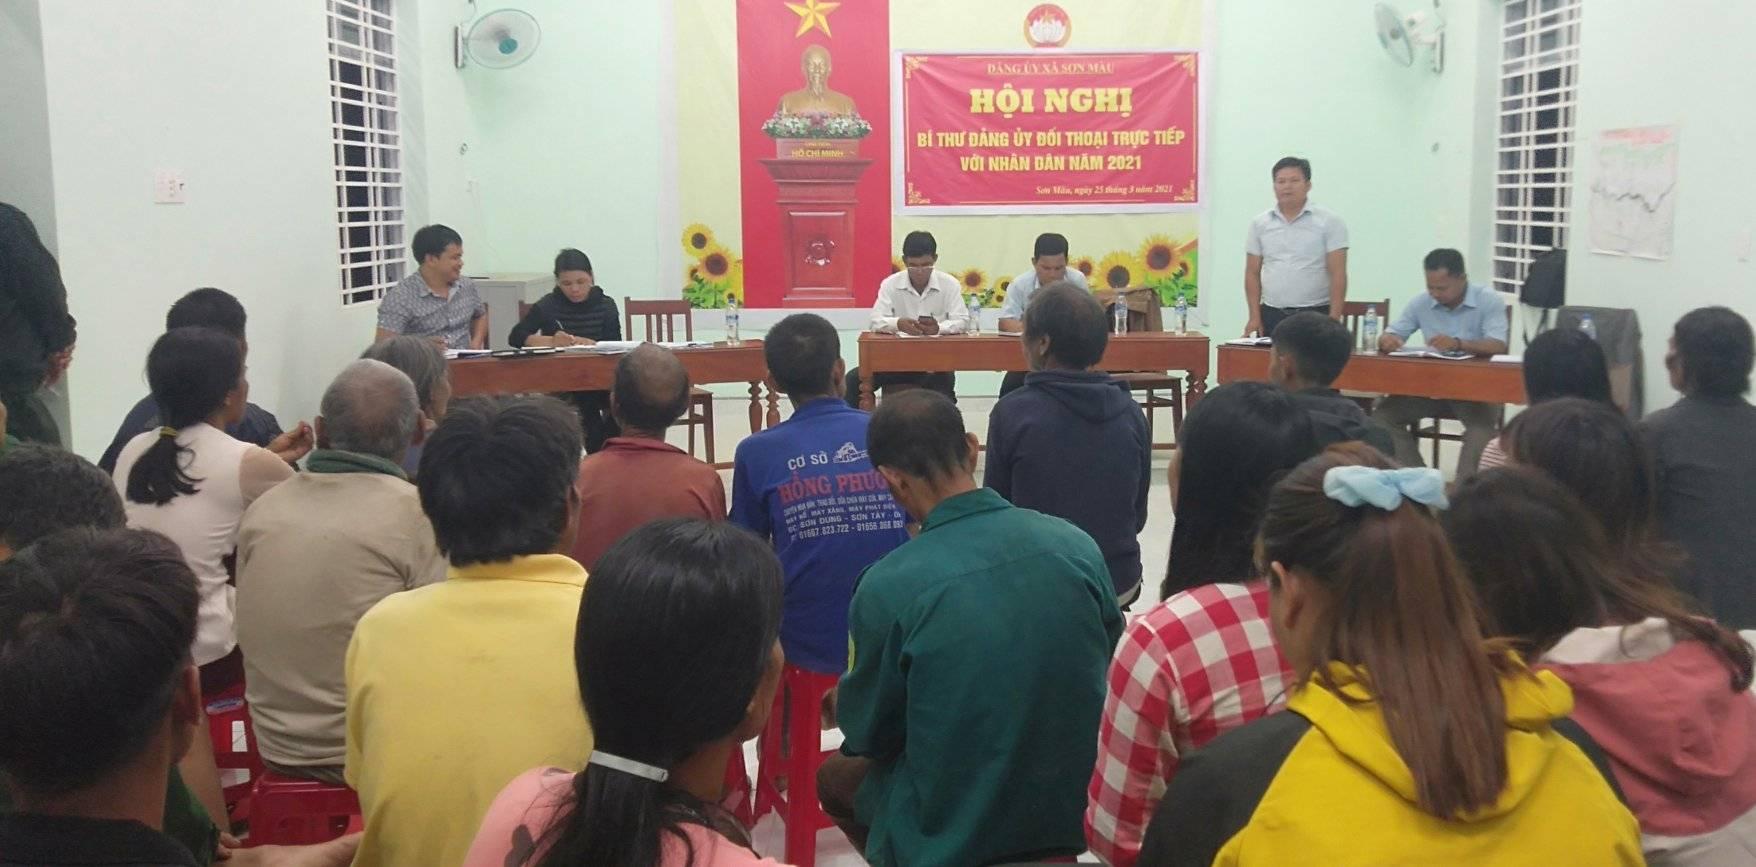 Sơn Màu: Bí thư Đảng ủy đối thoại trực tiếp với Nhân dân